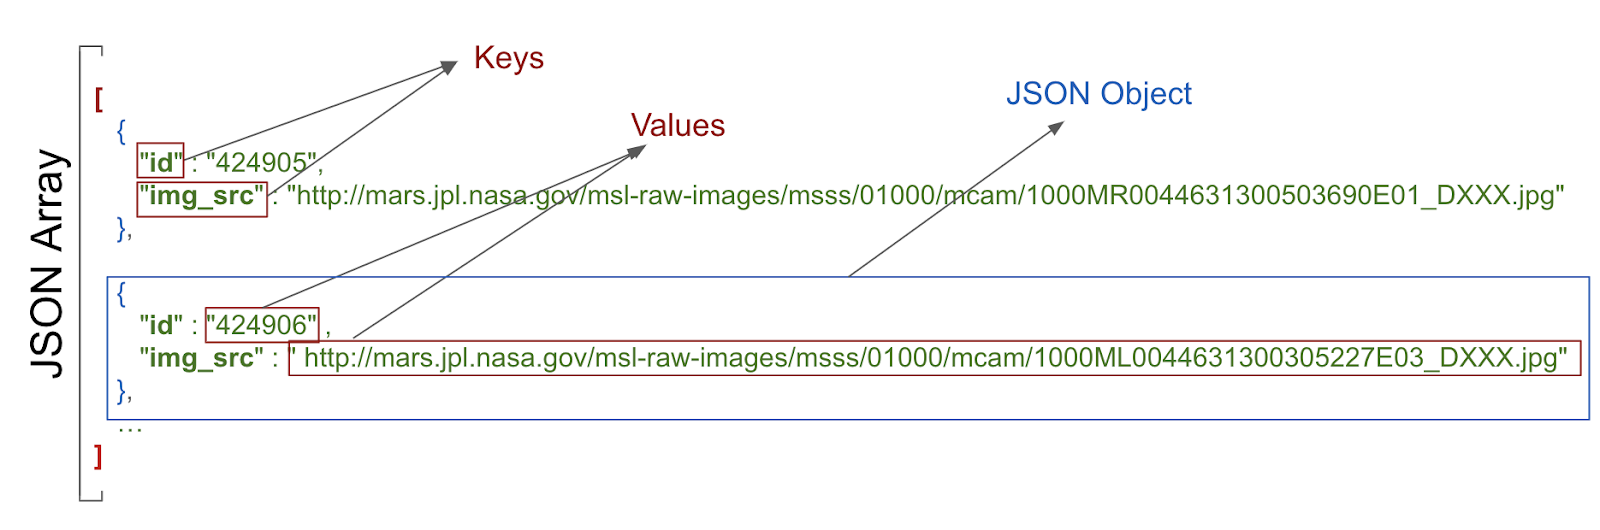 Affichage des paires clé-valeur et de l'objet JSON